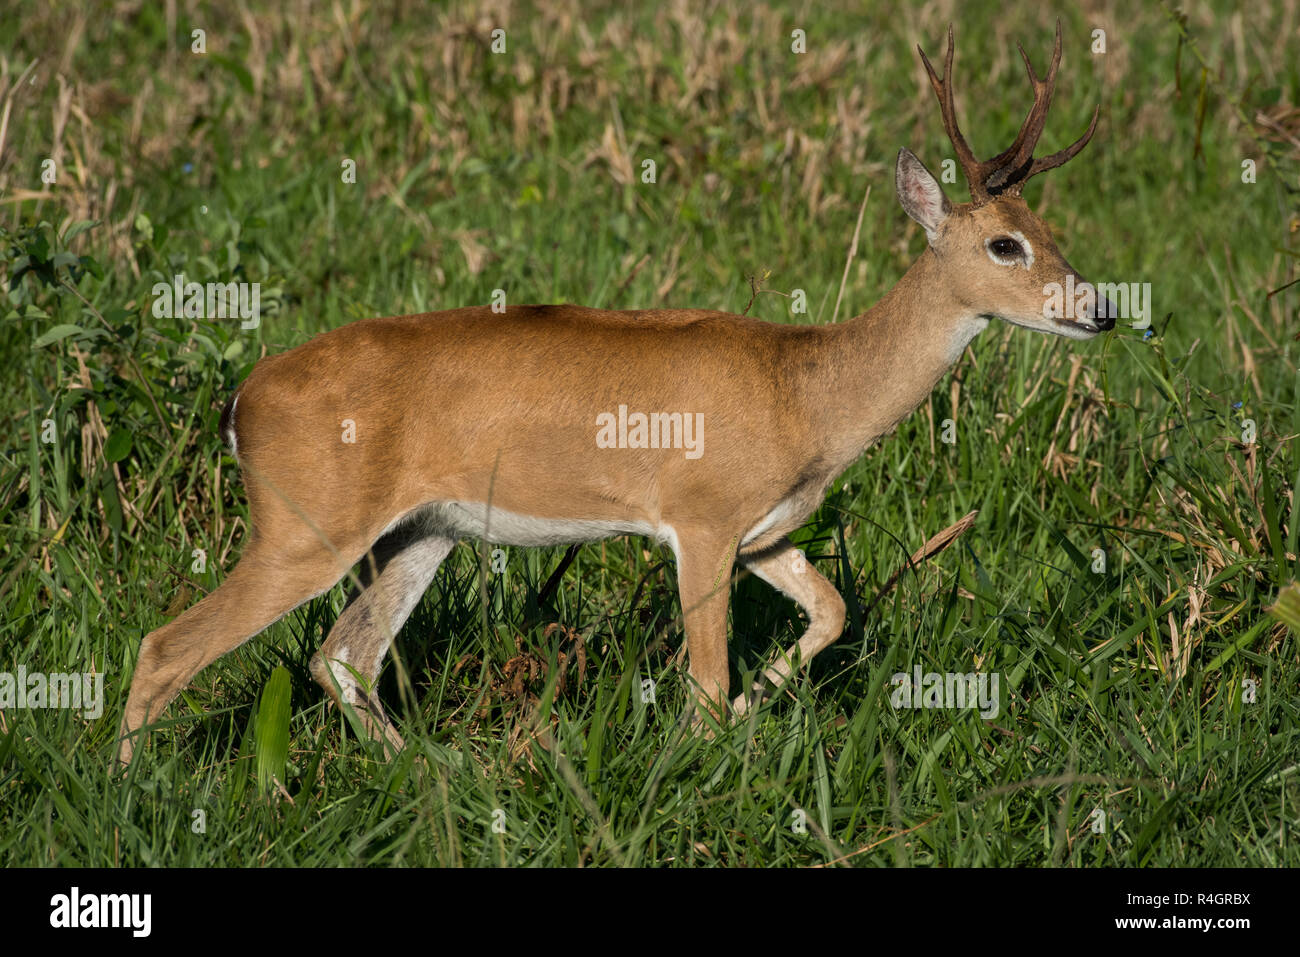 Pampa deer (Ozotoceros bezoarticus), maschio viene eseguito su erba, Pantanal, Mato Grosso do Sul, Brasile Foto Stock